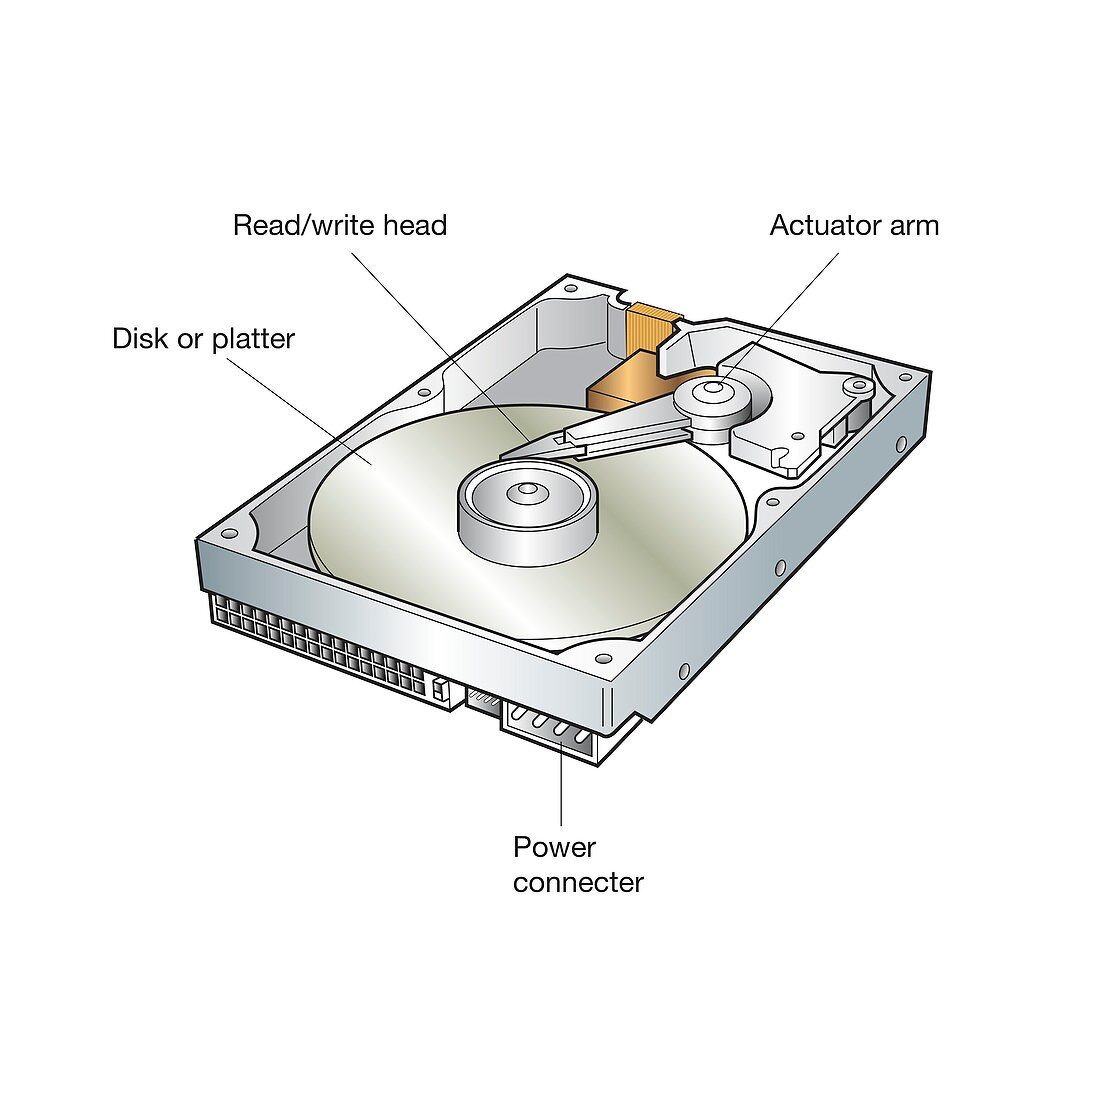 Hard disk drive, illustration